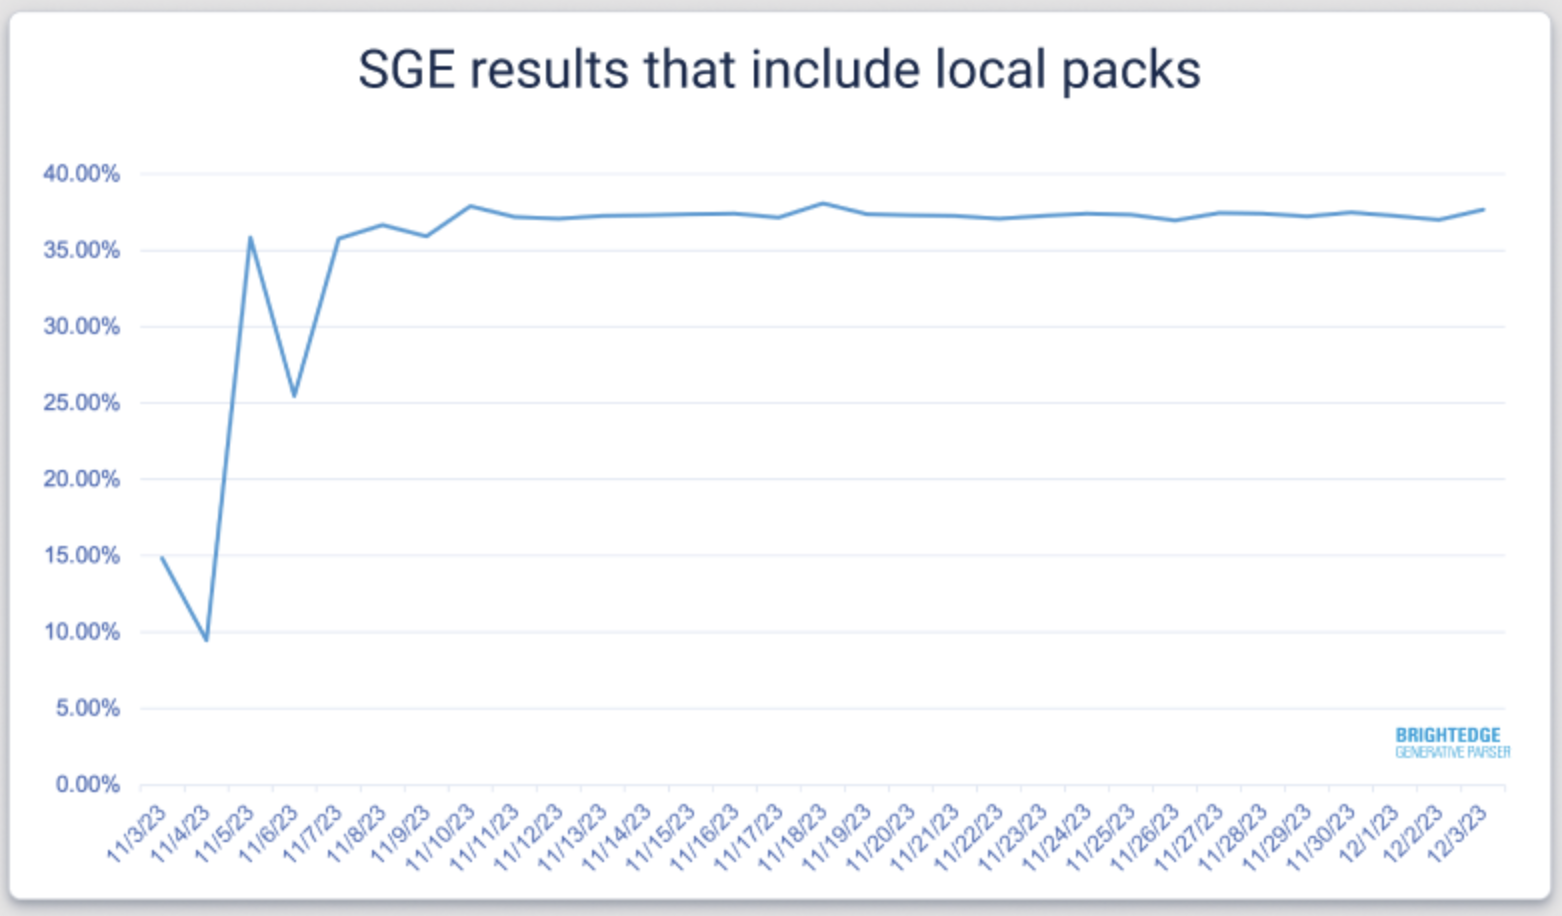 локальные пакеты Google SGE